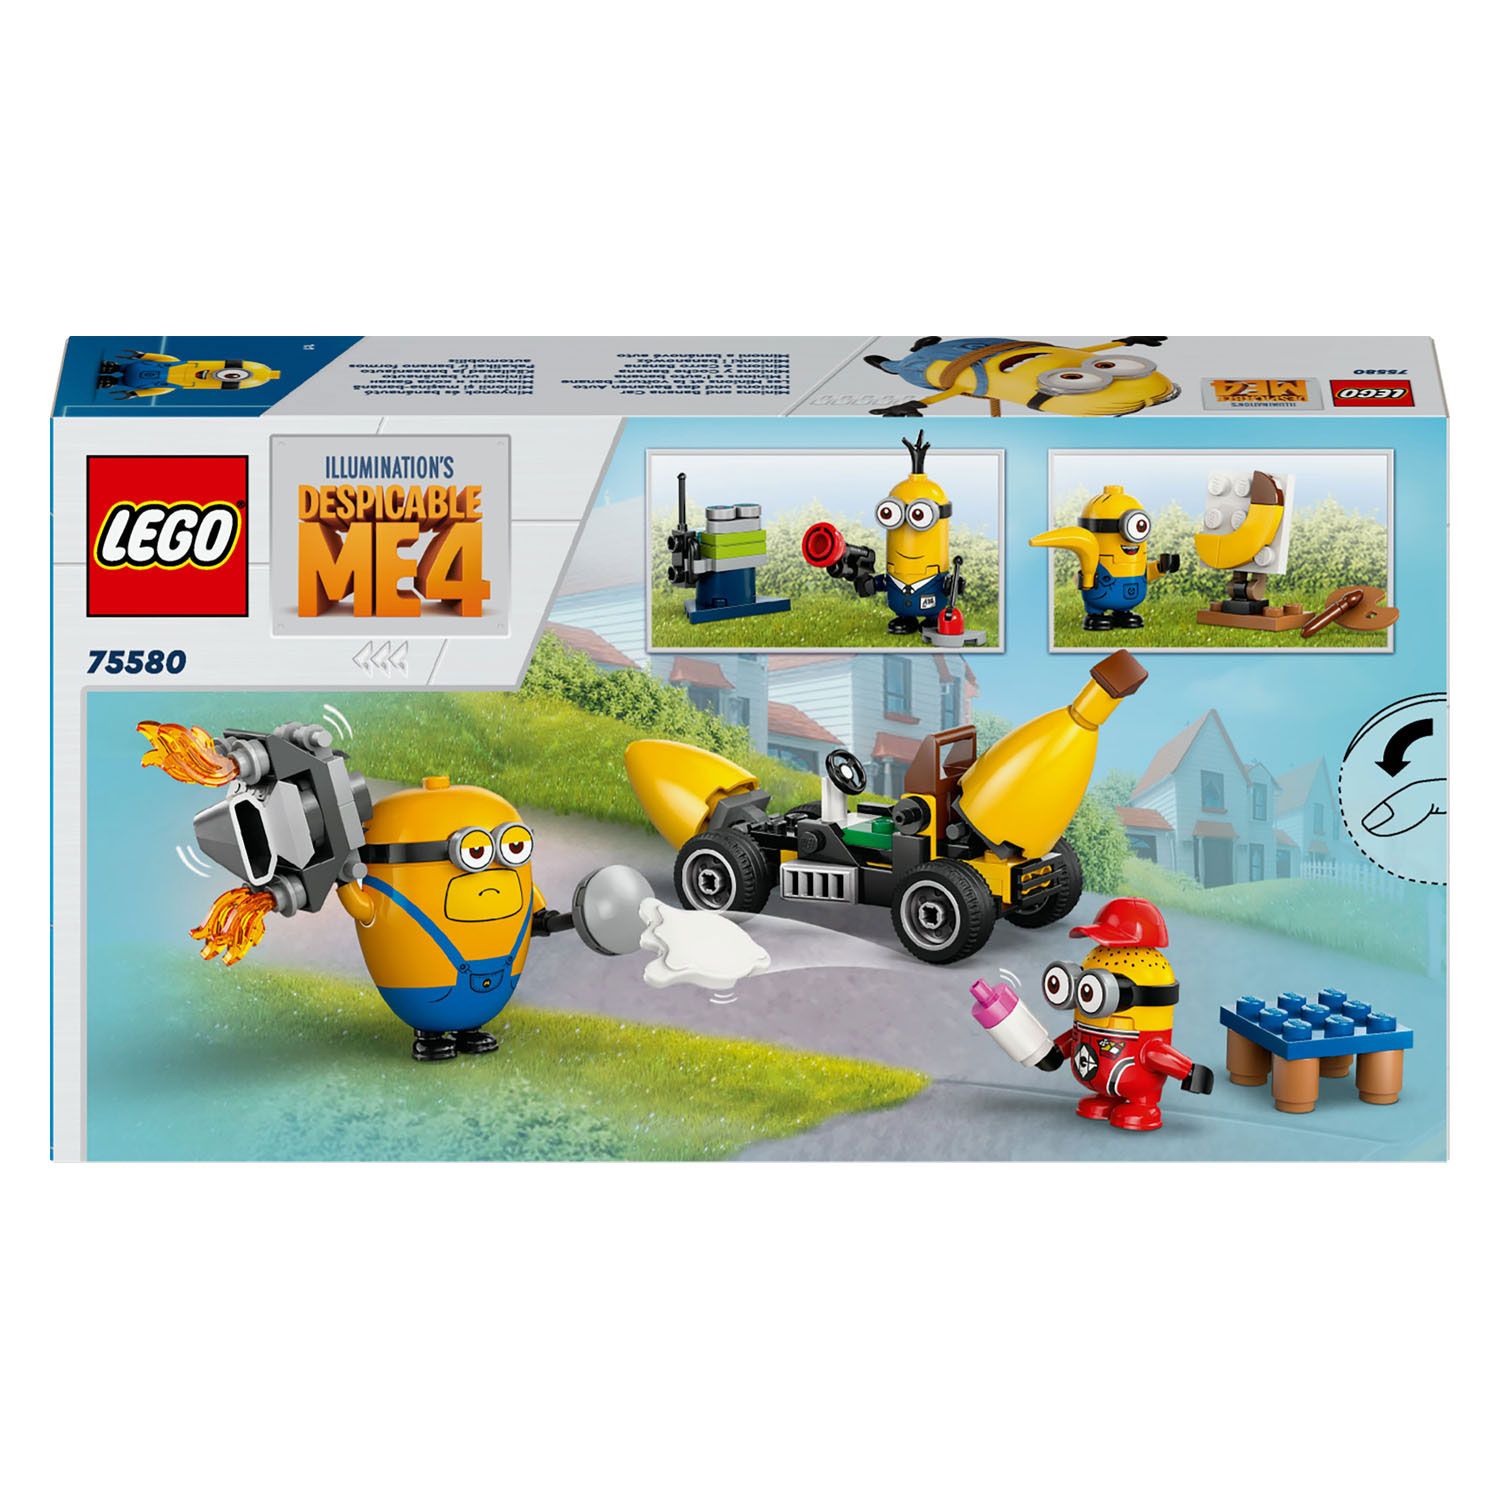 LEGO Despicable Me 75580 Les Minions et la voiture banane